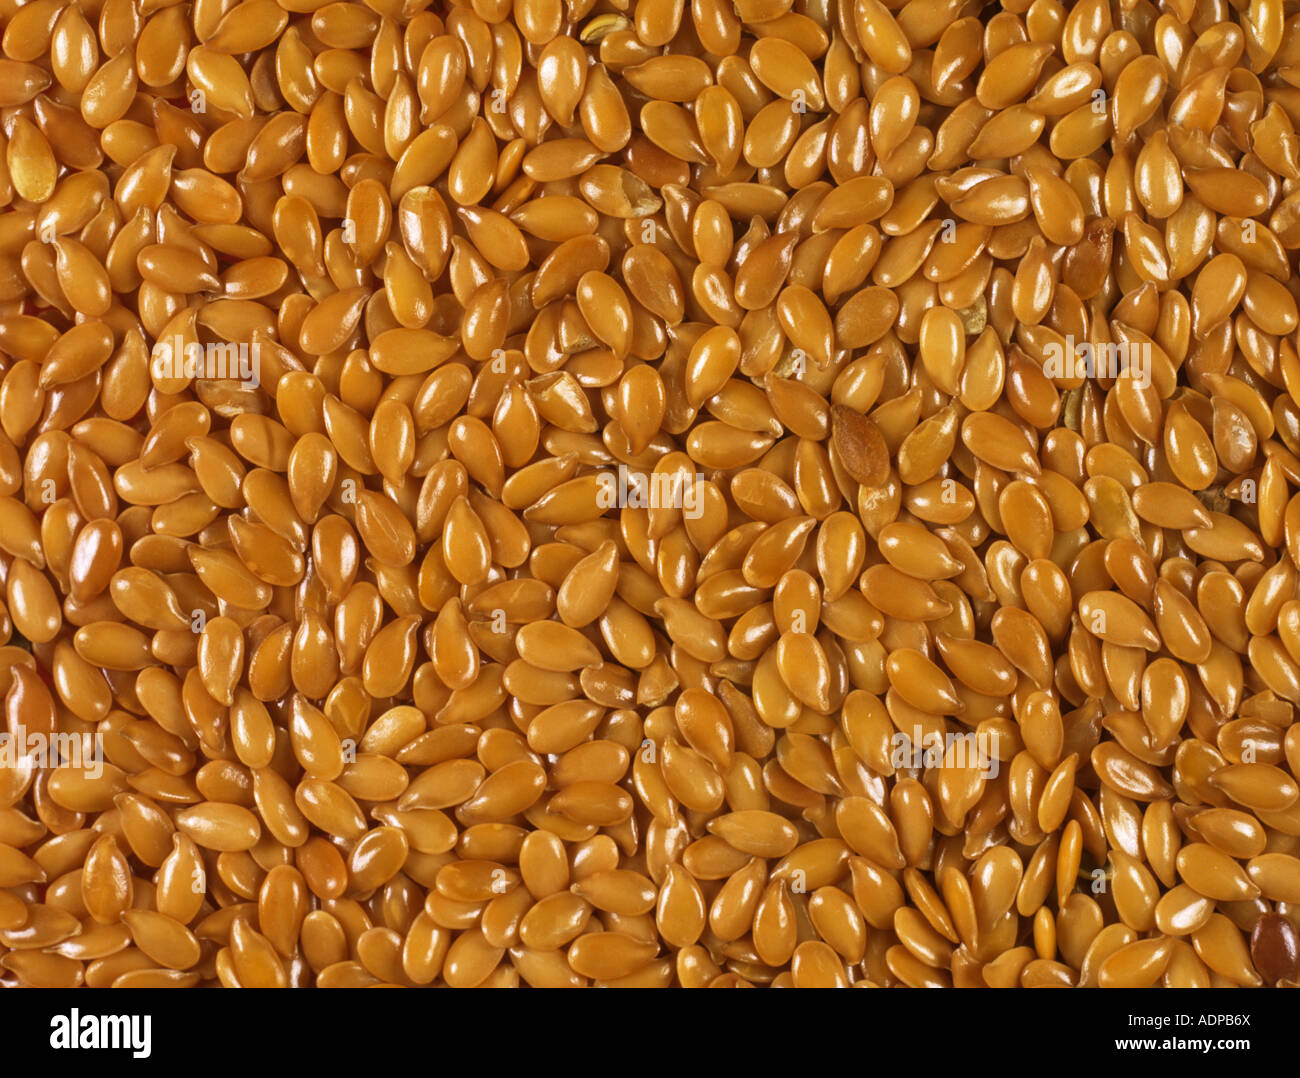 Goldenen Leinsamen oder Leinsamen verwendet in der Küche und gesunde Lebensmittel Stockfoto